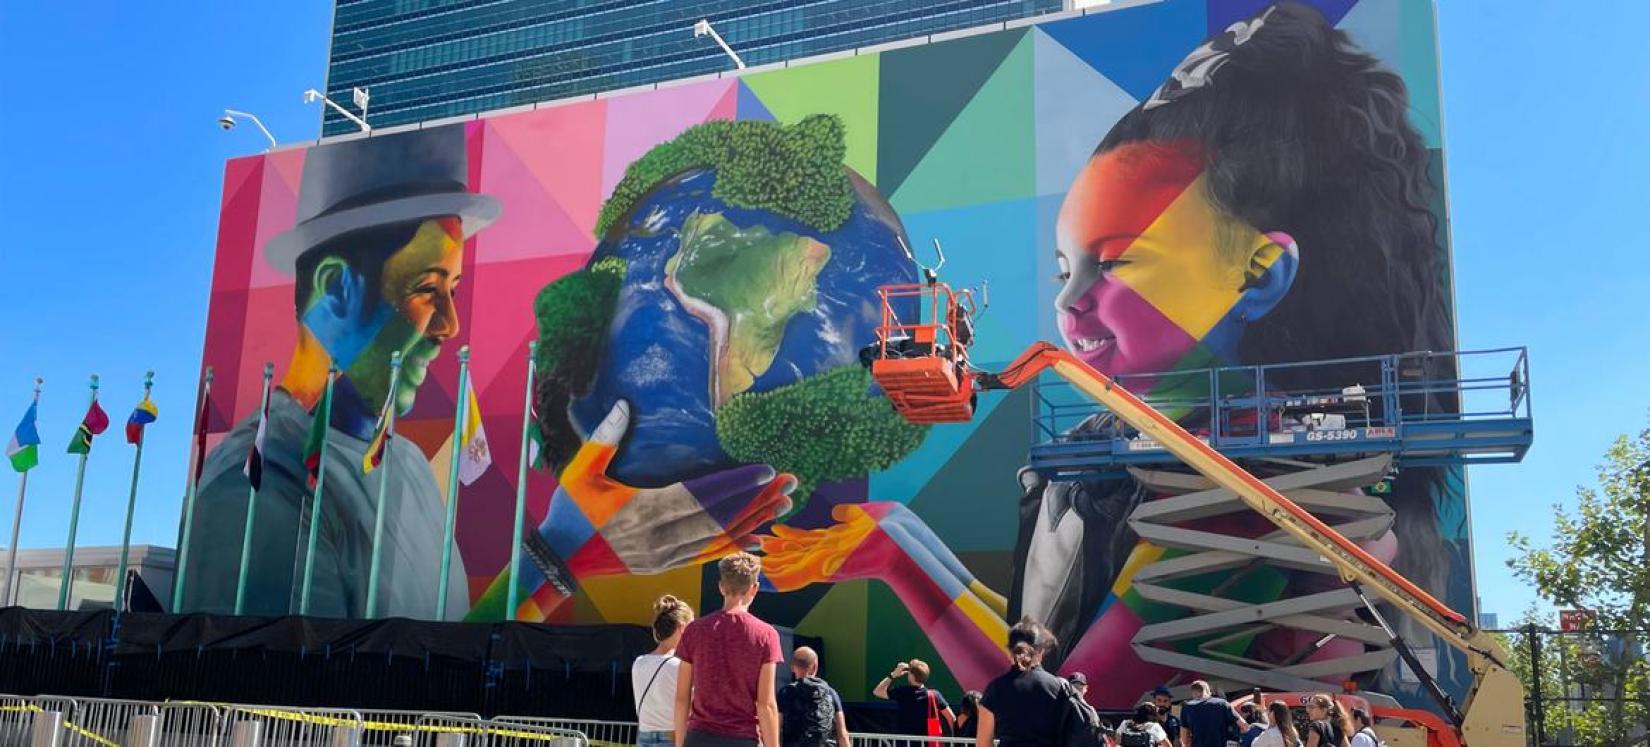 O artista Eduardo Kobra e sua equipe estão dando os retoques finais em seu mural na First Avenue de Nova York, dedicado à sustentabilidade e preservação ambiental.